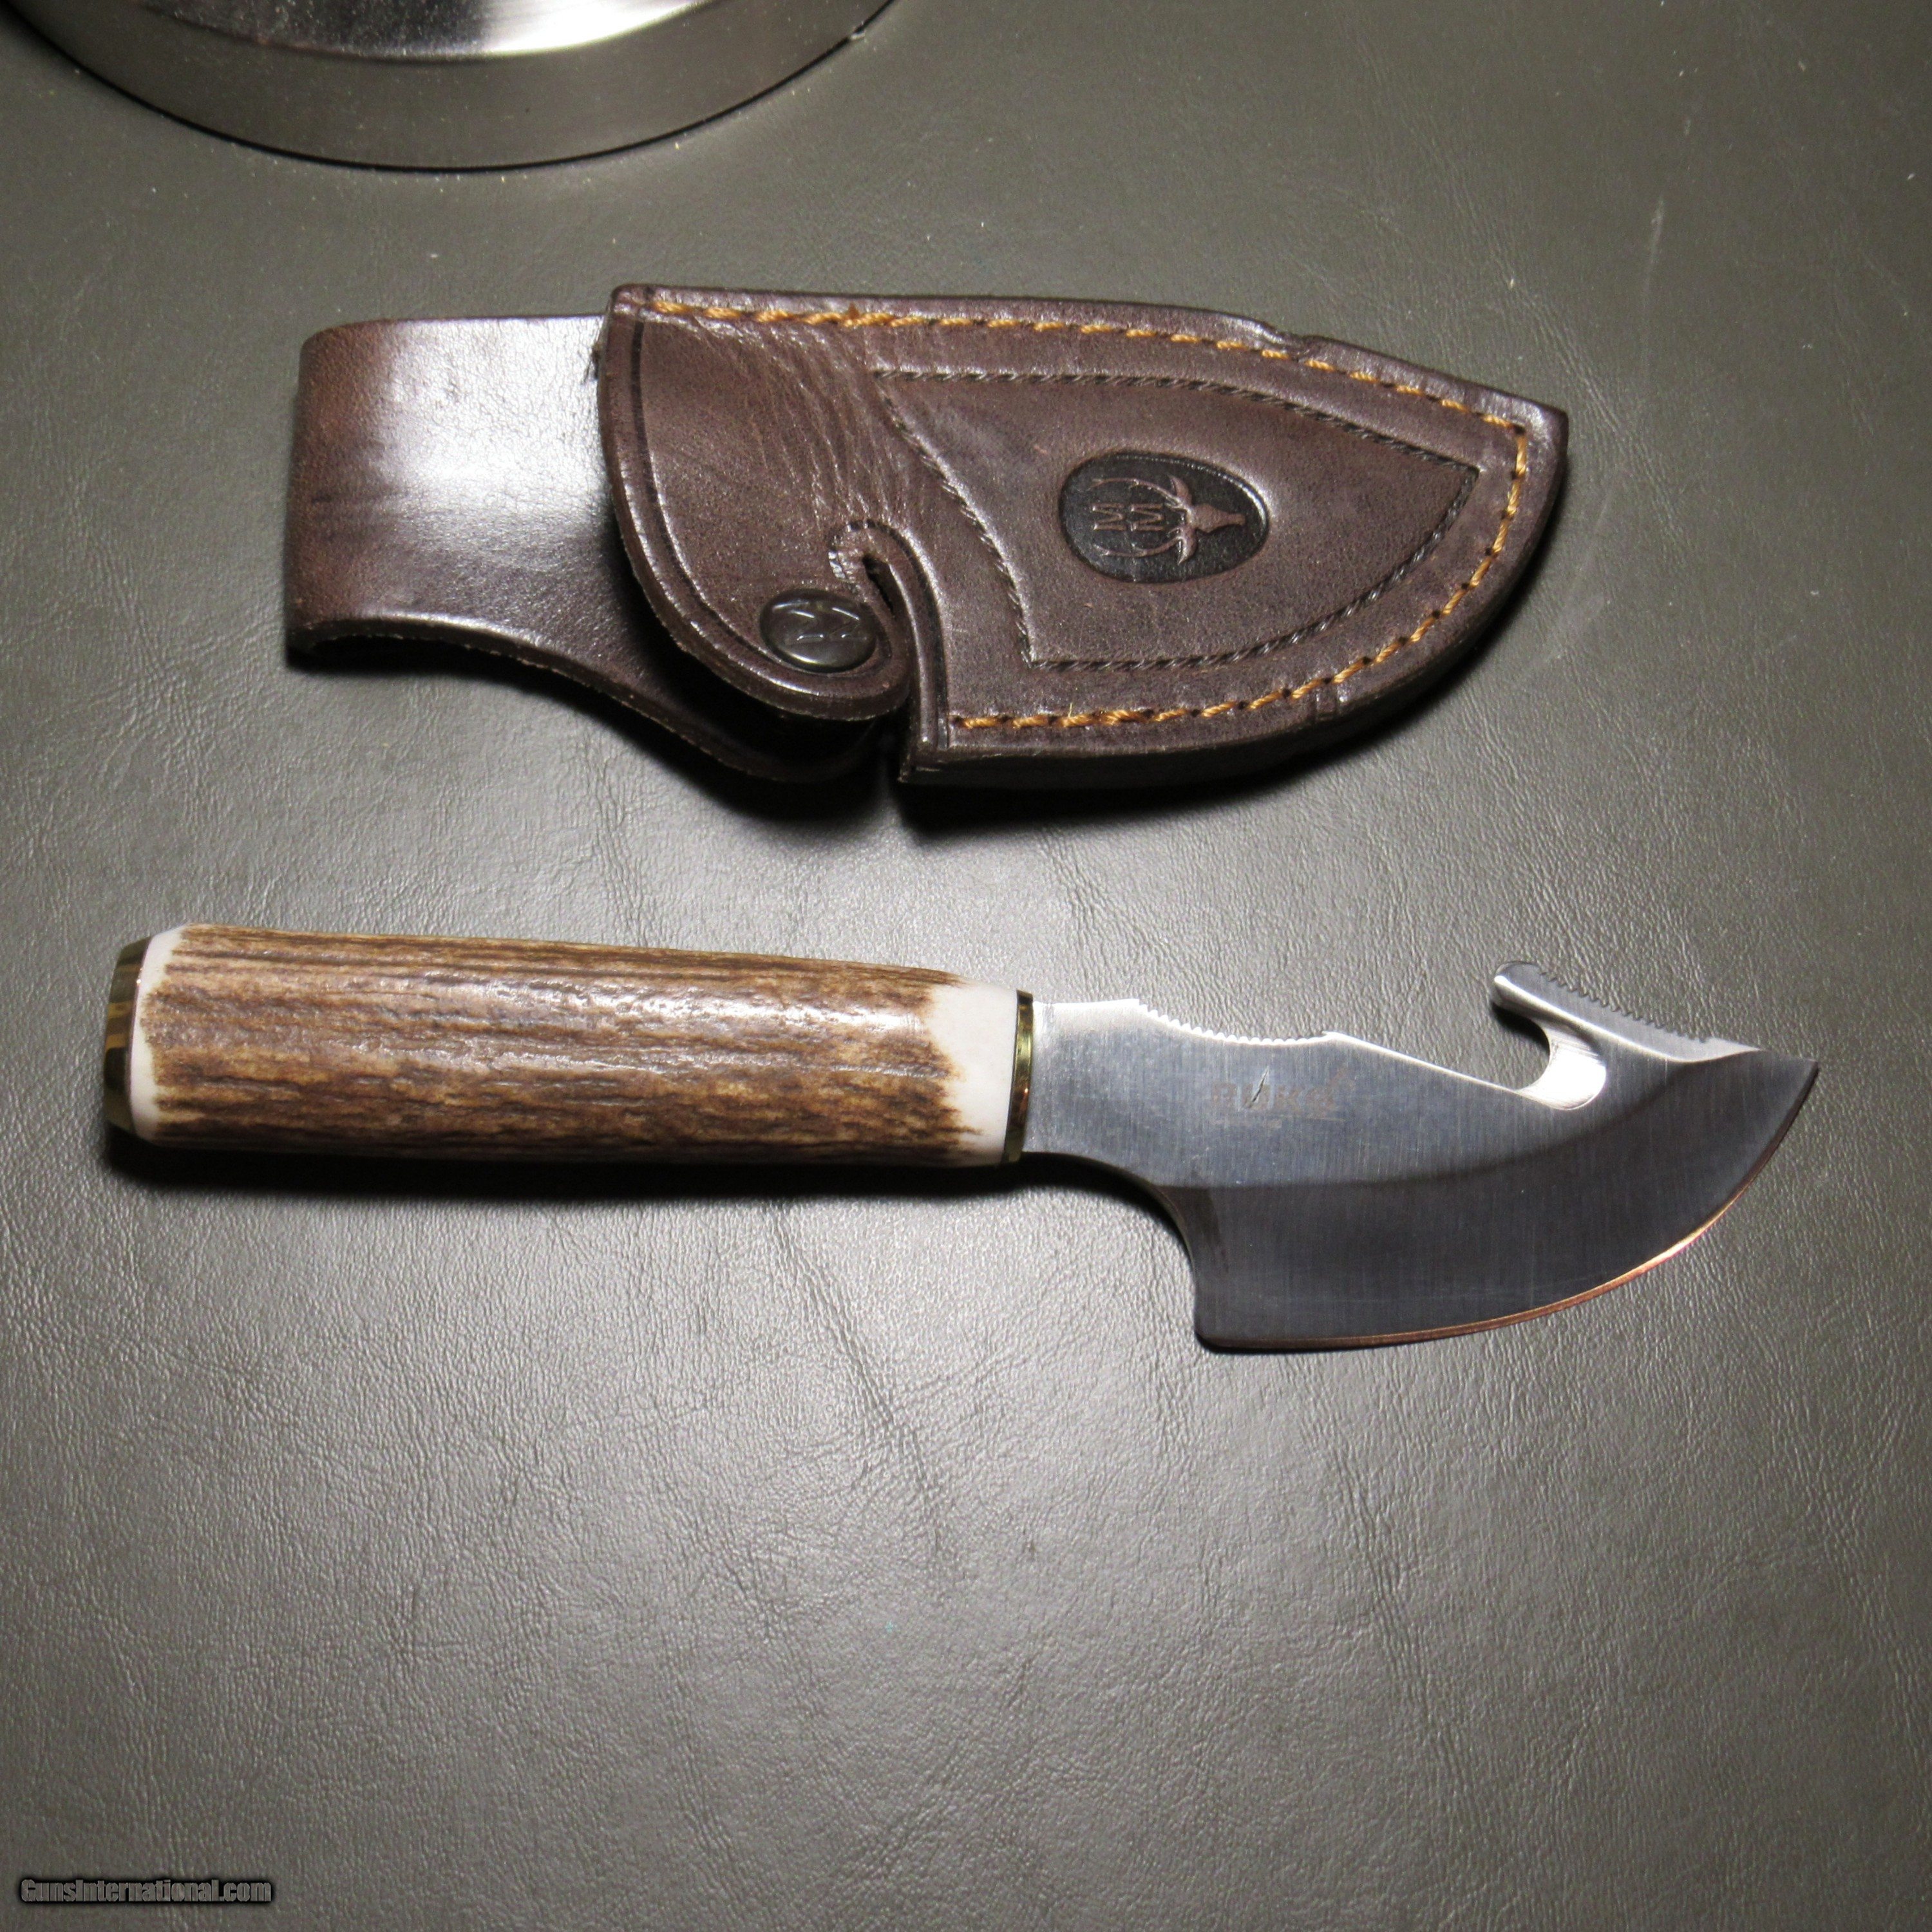 Ruko Gut Hook hunting knife